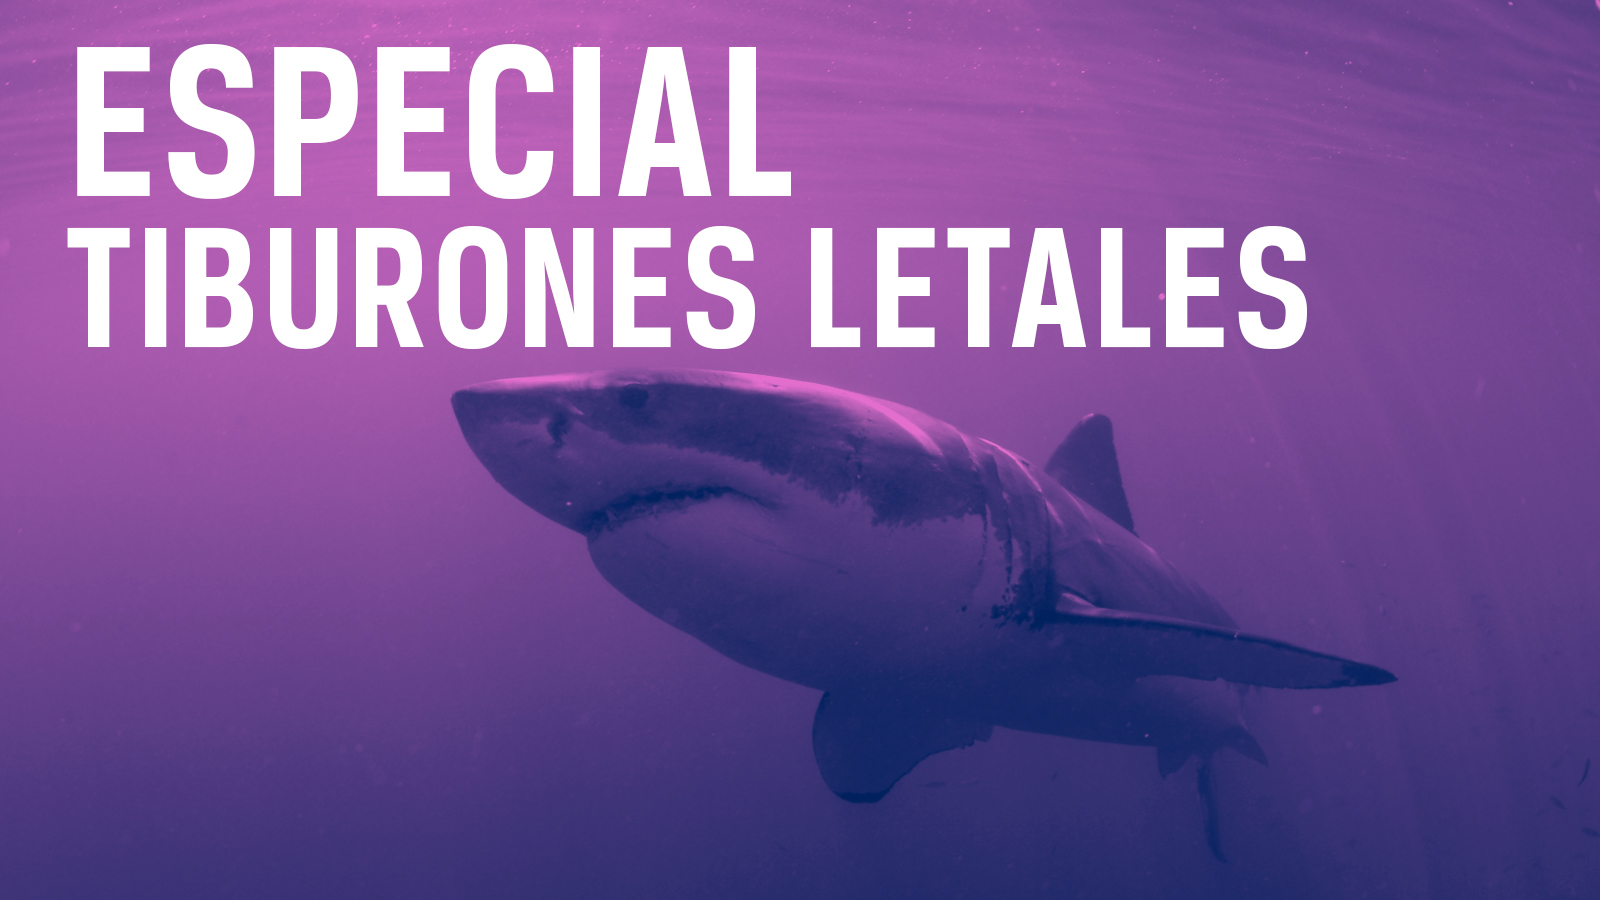 Especial tiburones letales